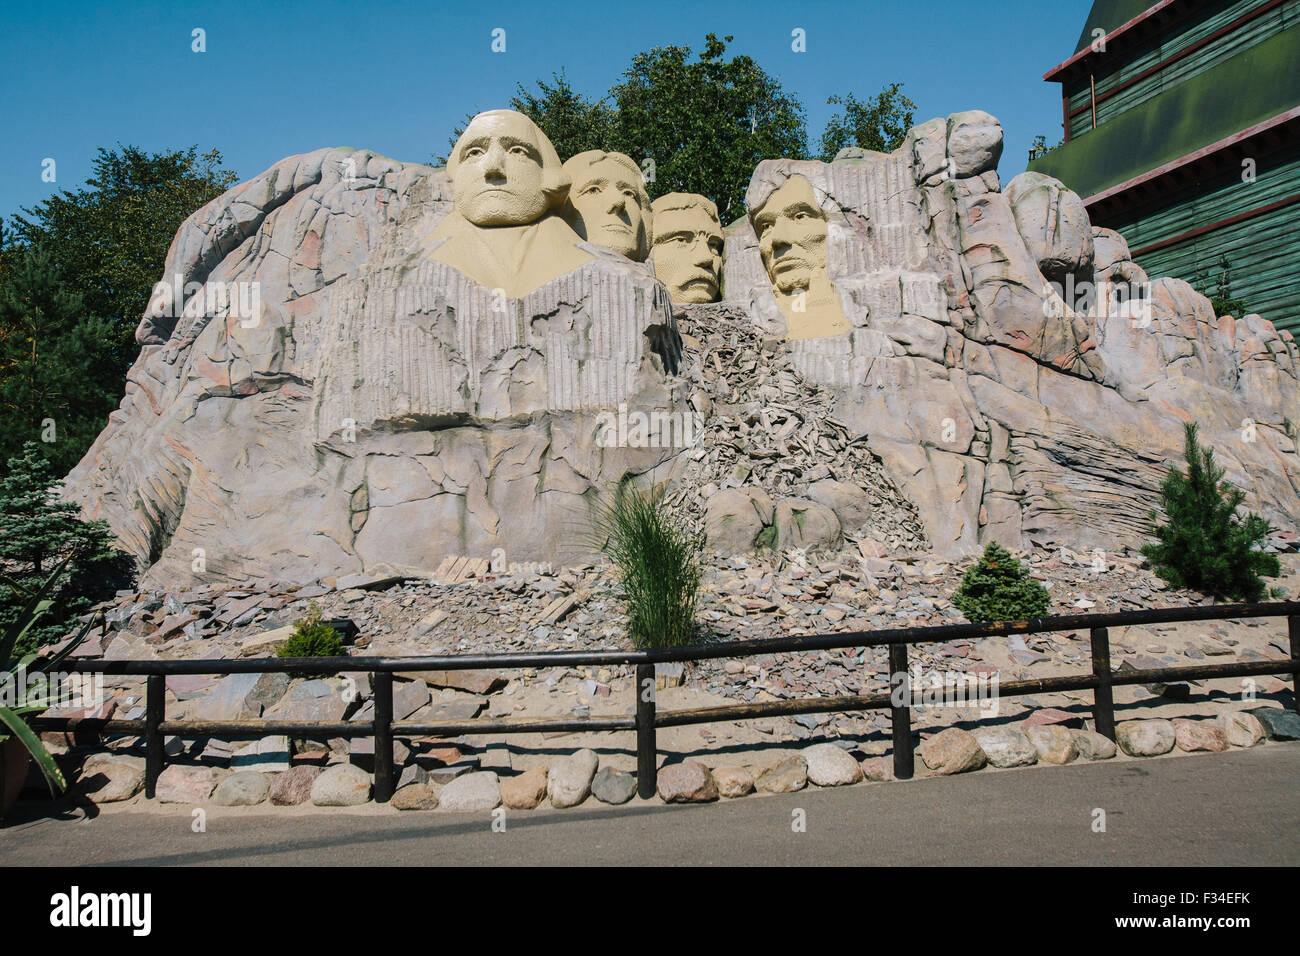 Billund, Dänemark -23 Aug 2015- National Memorial, Mount Rushmore Modell mit lego-Stücken im Legoland Freizeitpark. Stockfoto